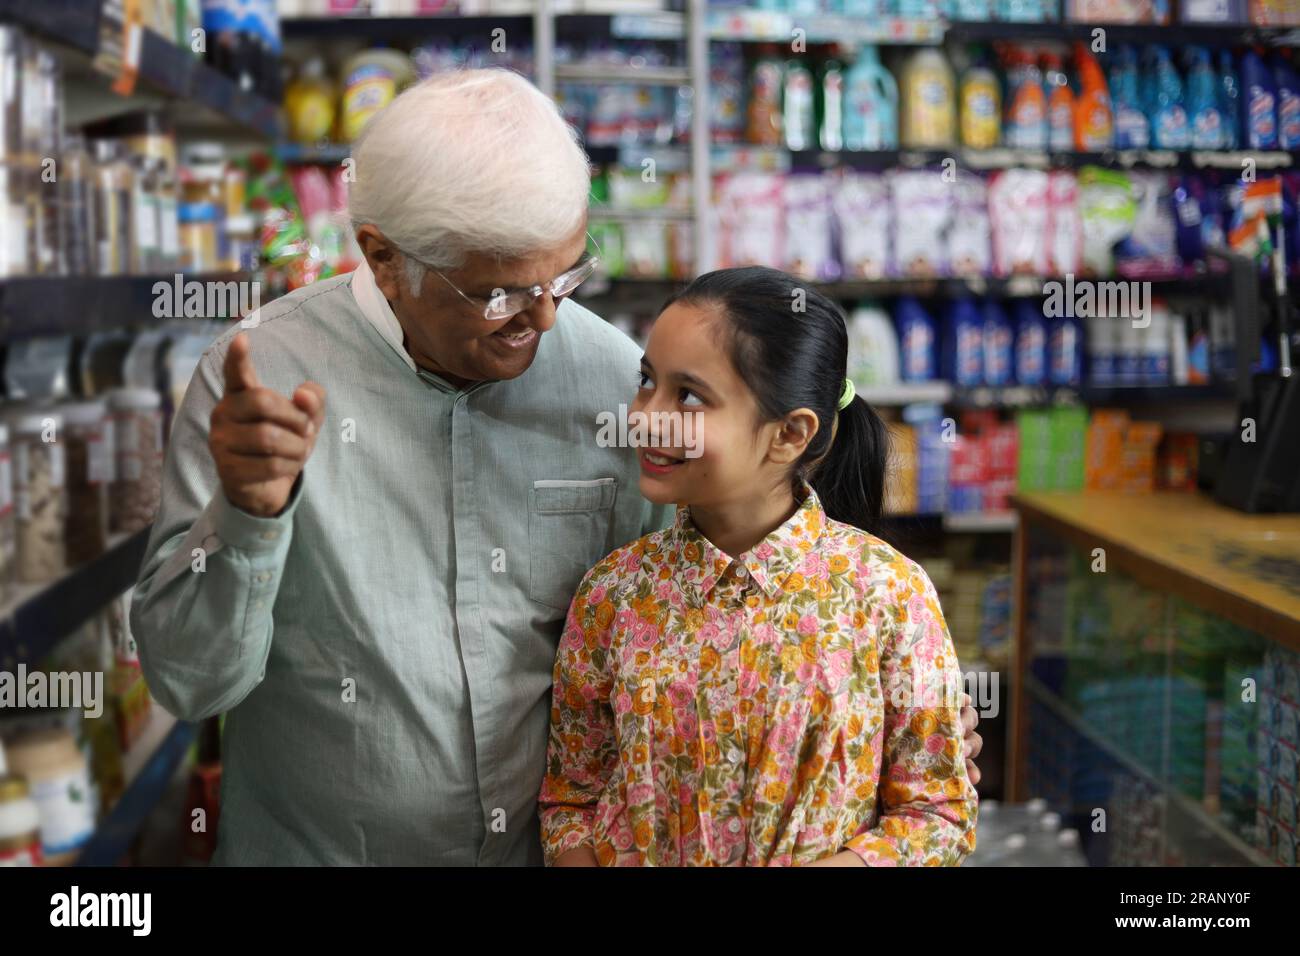 Felice nonno e nipote che si divertono ad acquistare in un negozio di alimentari. Comprare della spesa per casa in un supermercato. Foto Stock